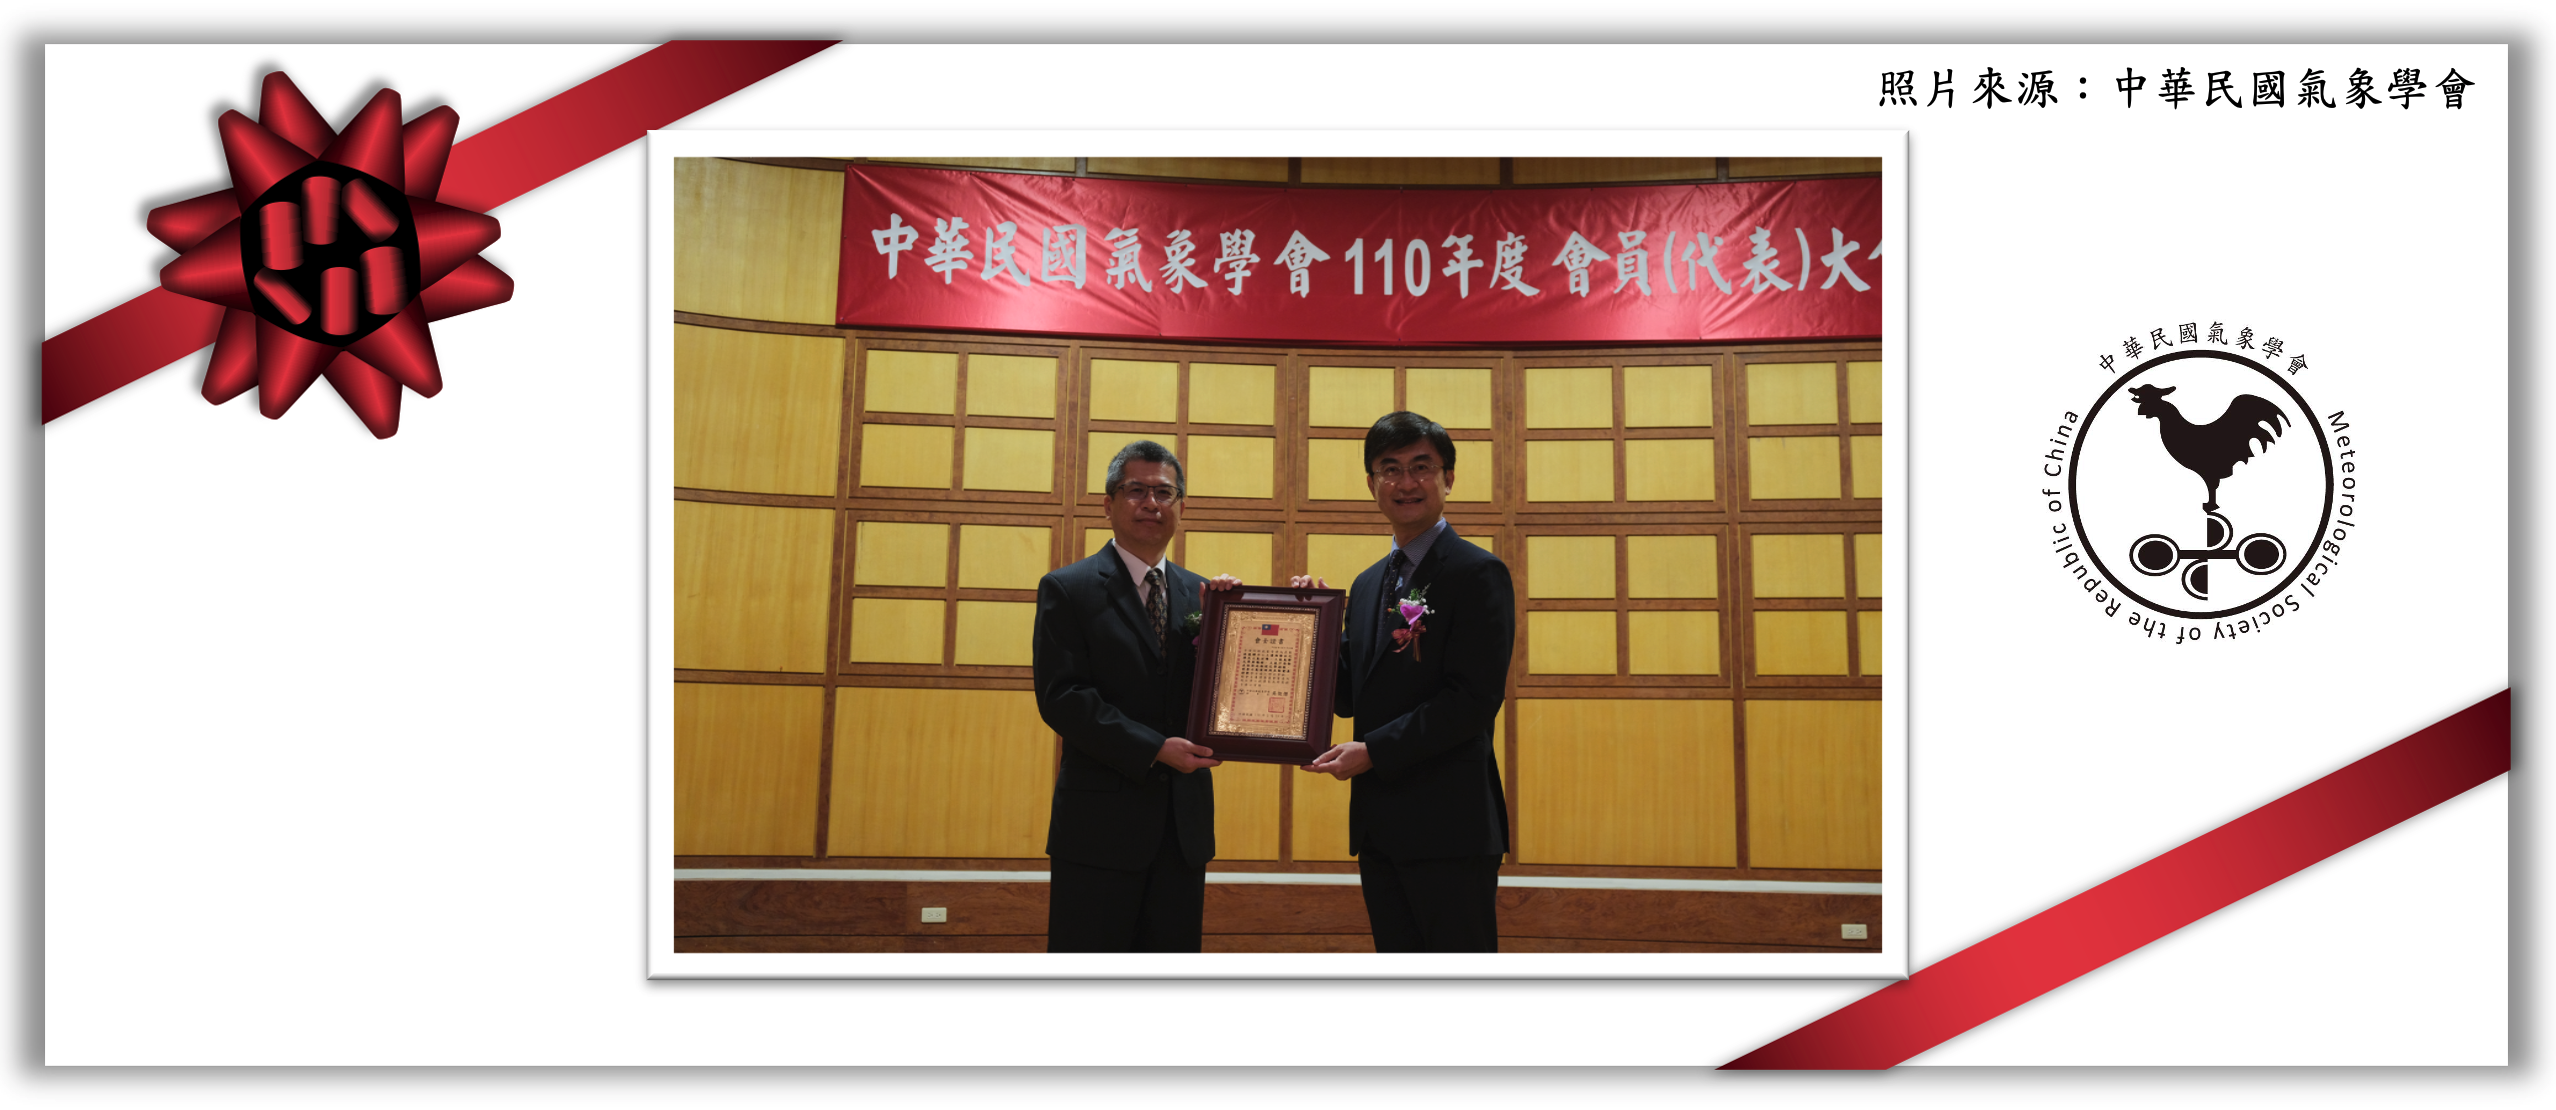 恭喜大氣系 林能暉教授 獲選110年『中華民國氣象學會會士』